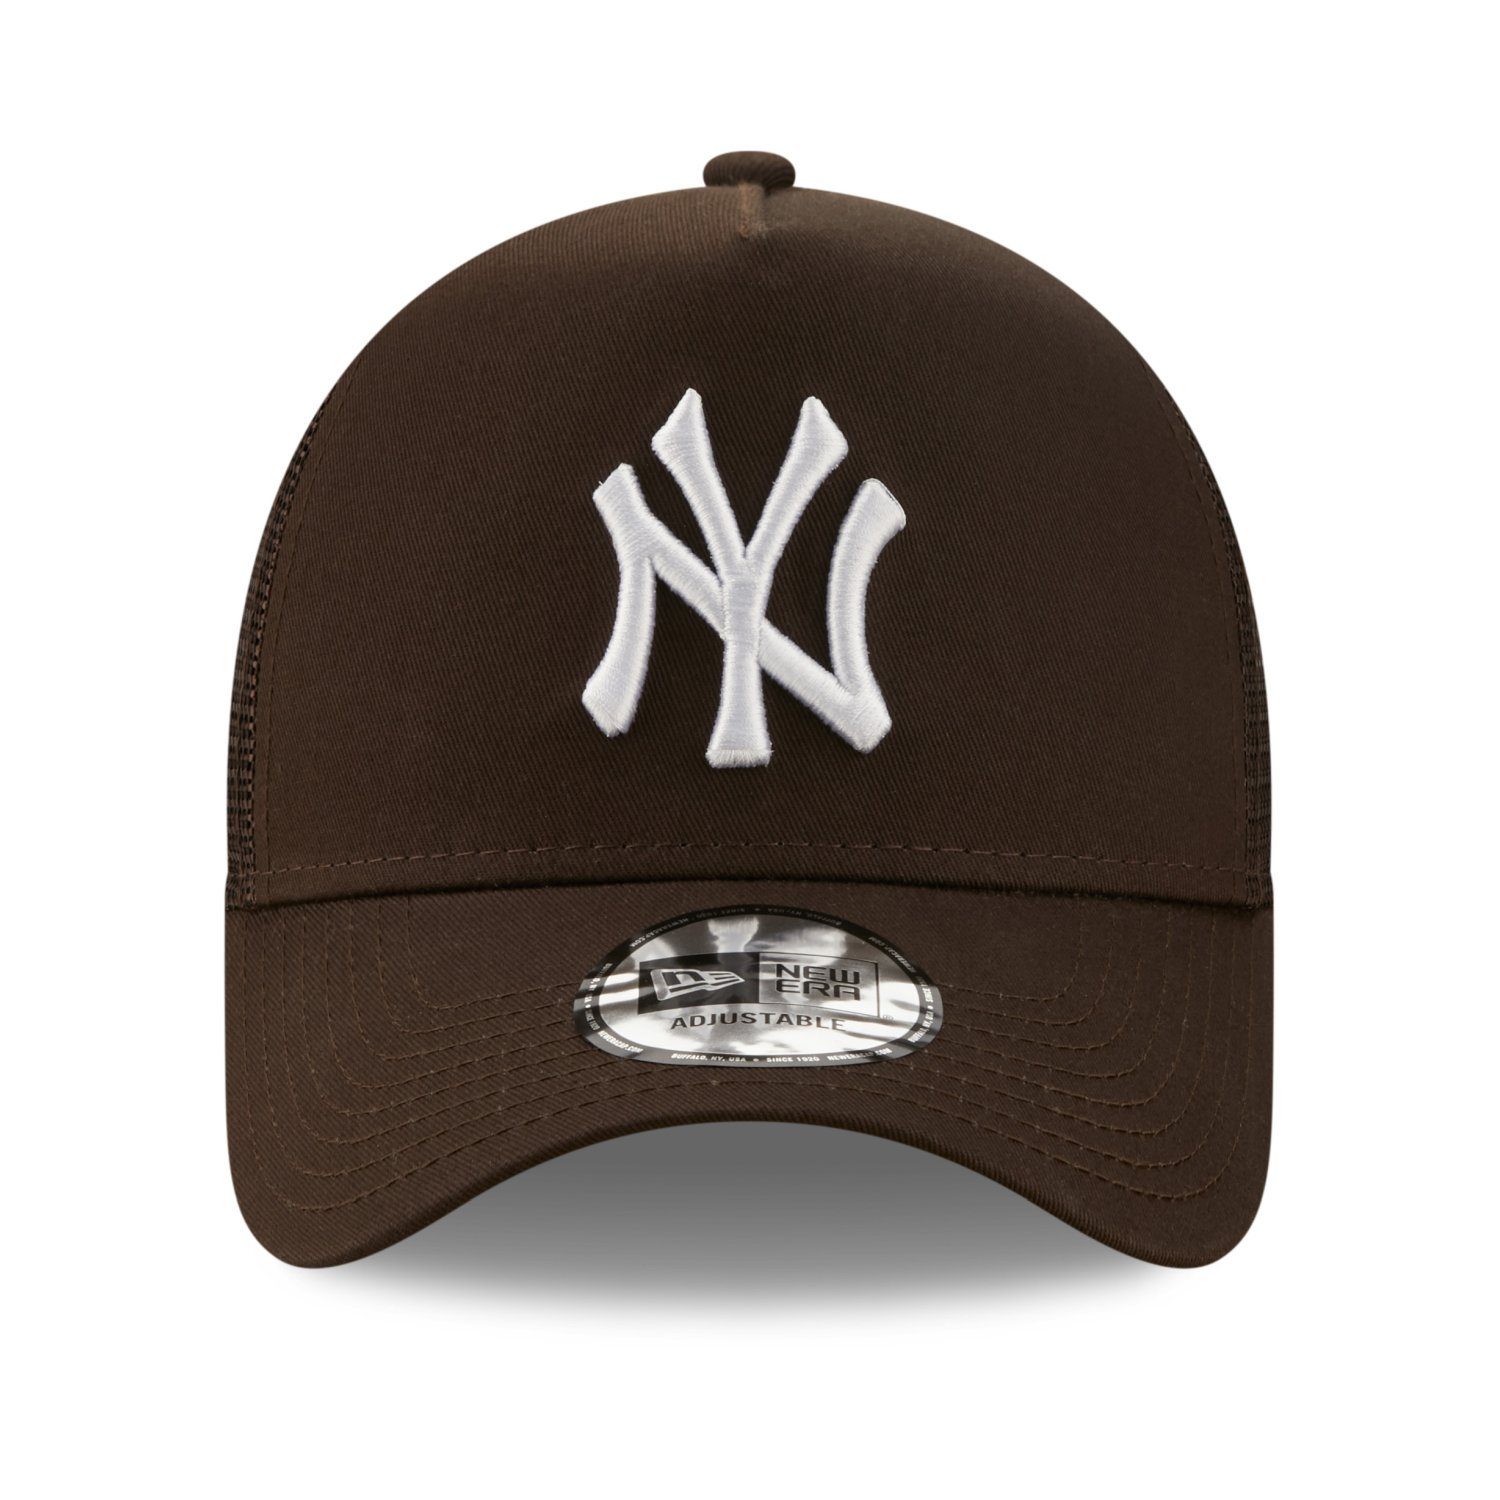 Trucker Cap Era Trucker New York Yankees AFrame New